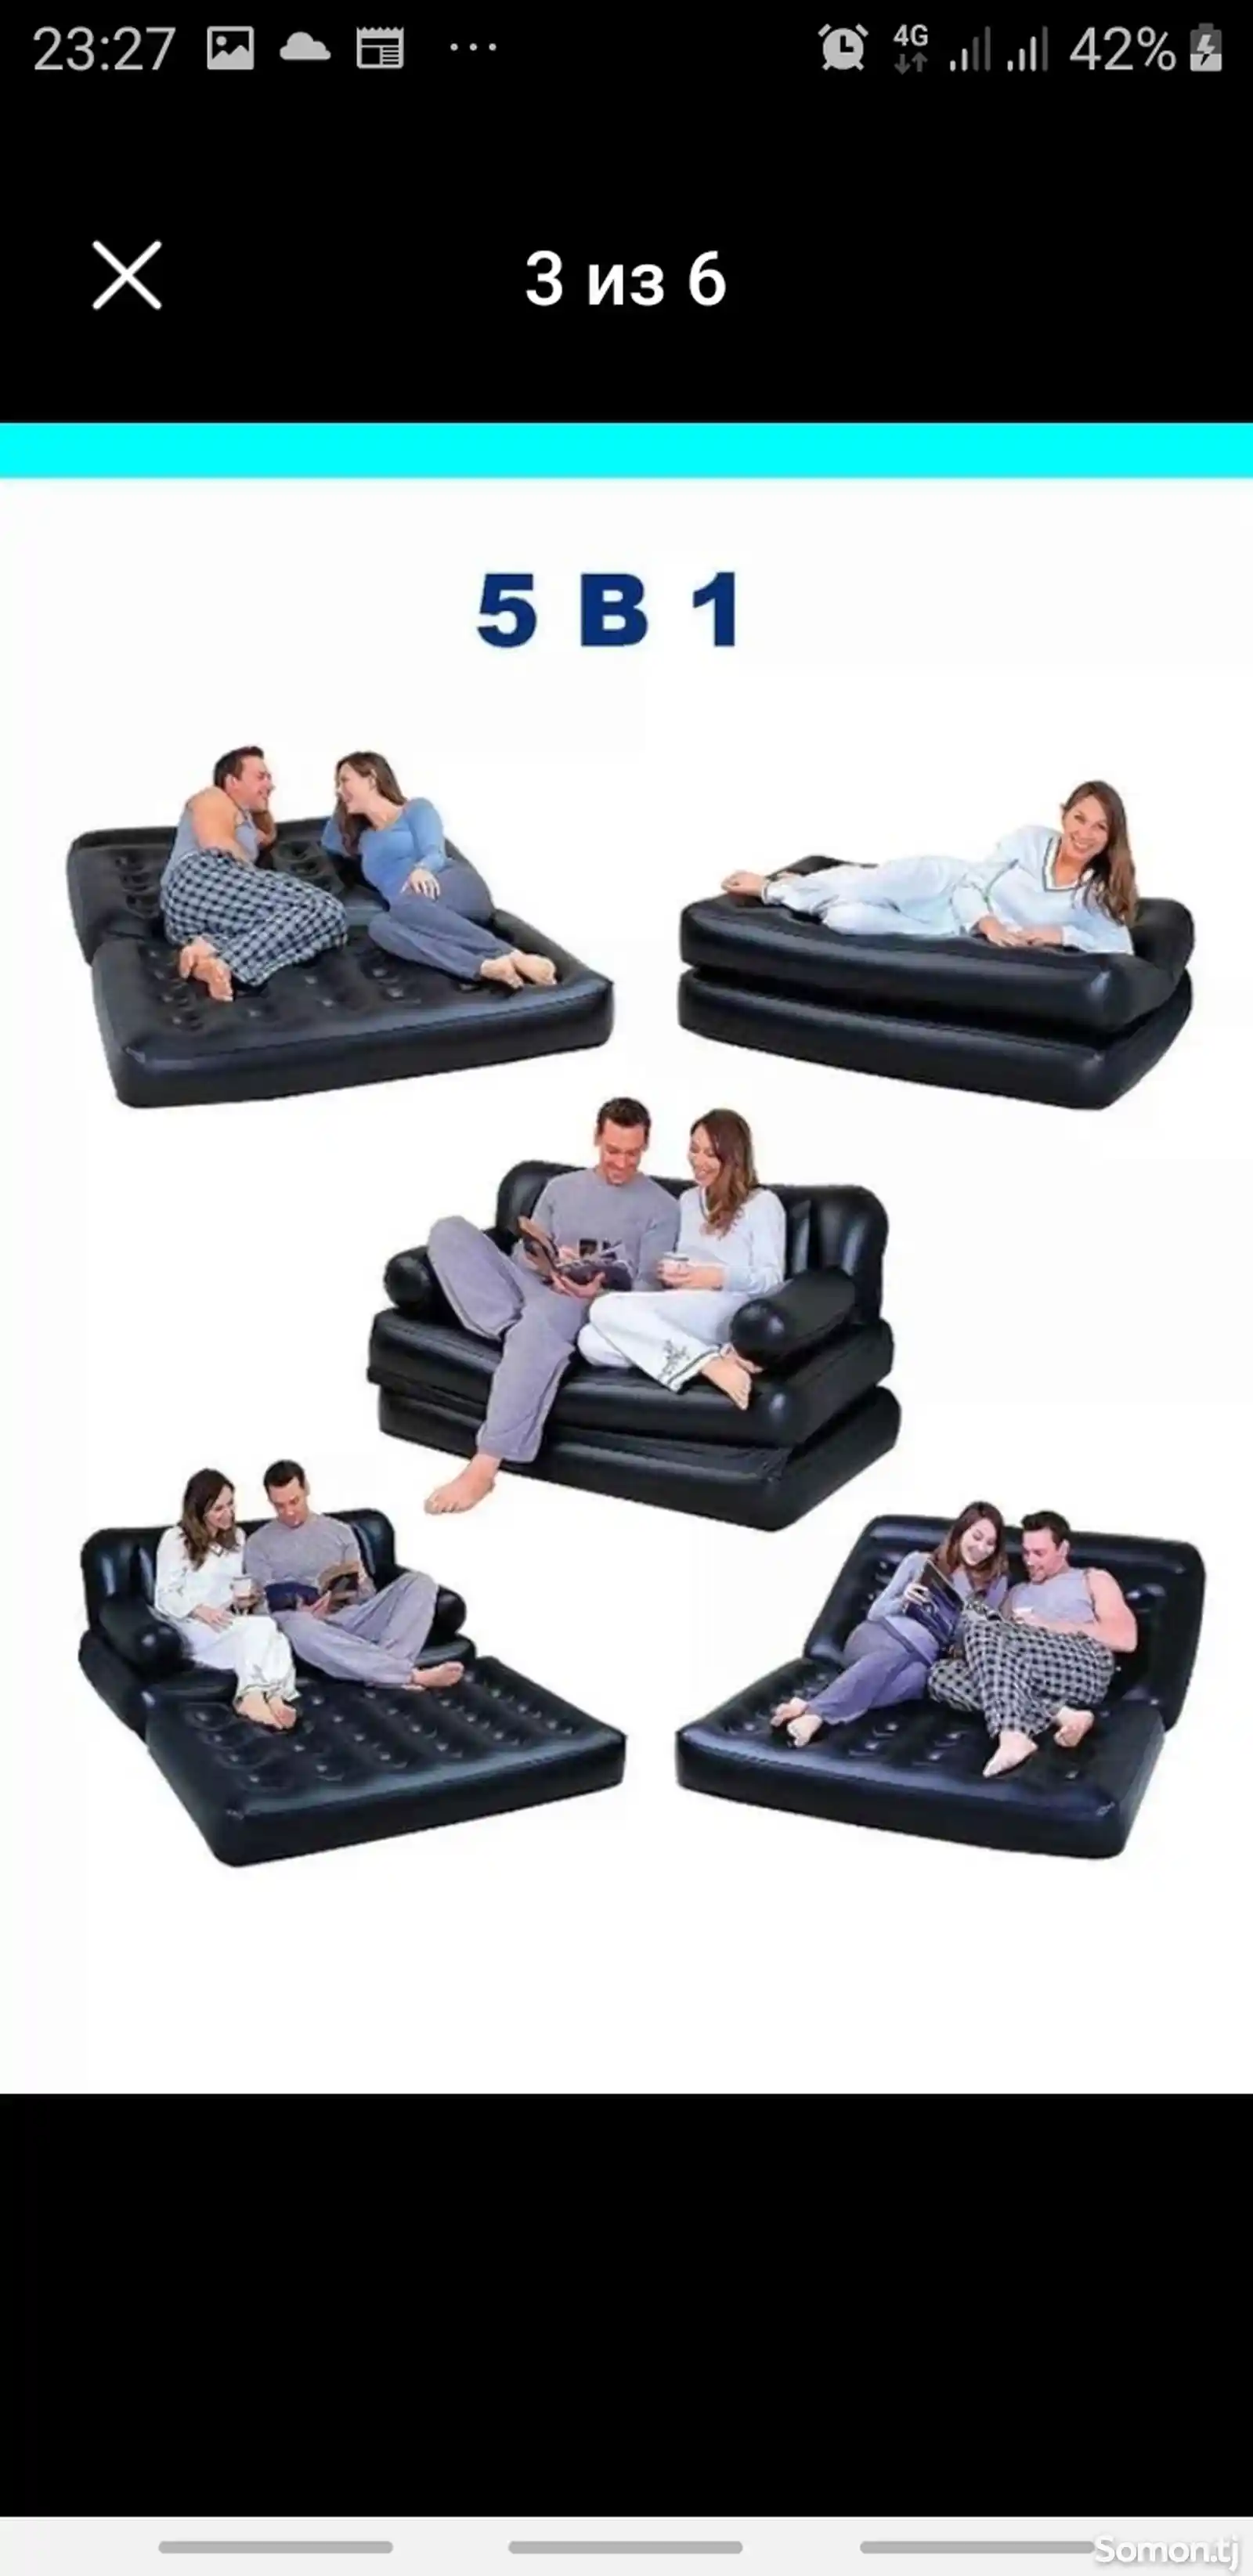 Надувной диван-2